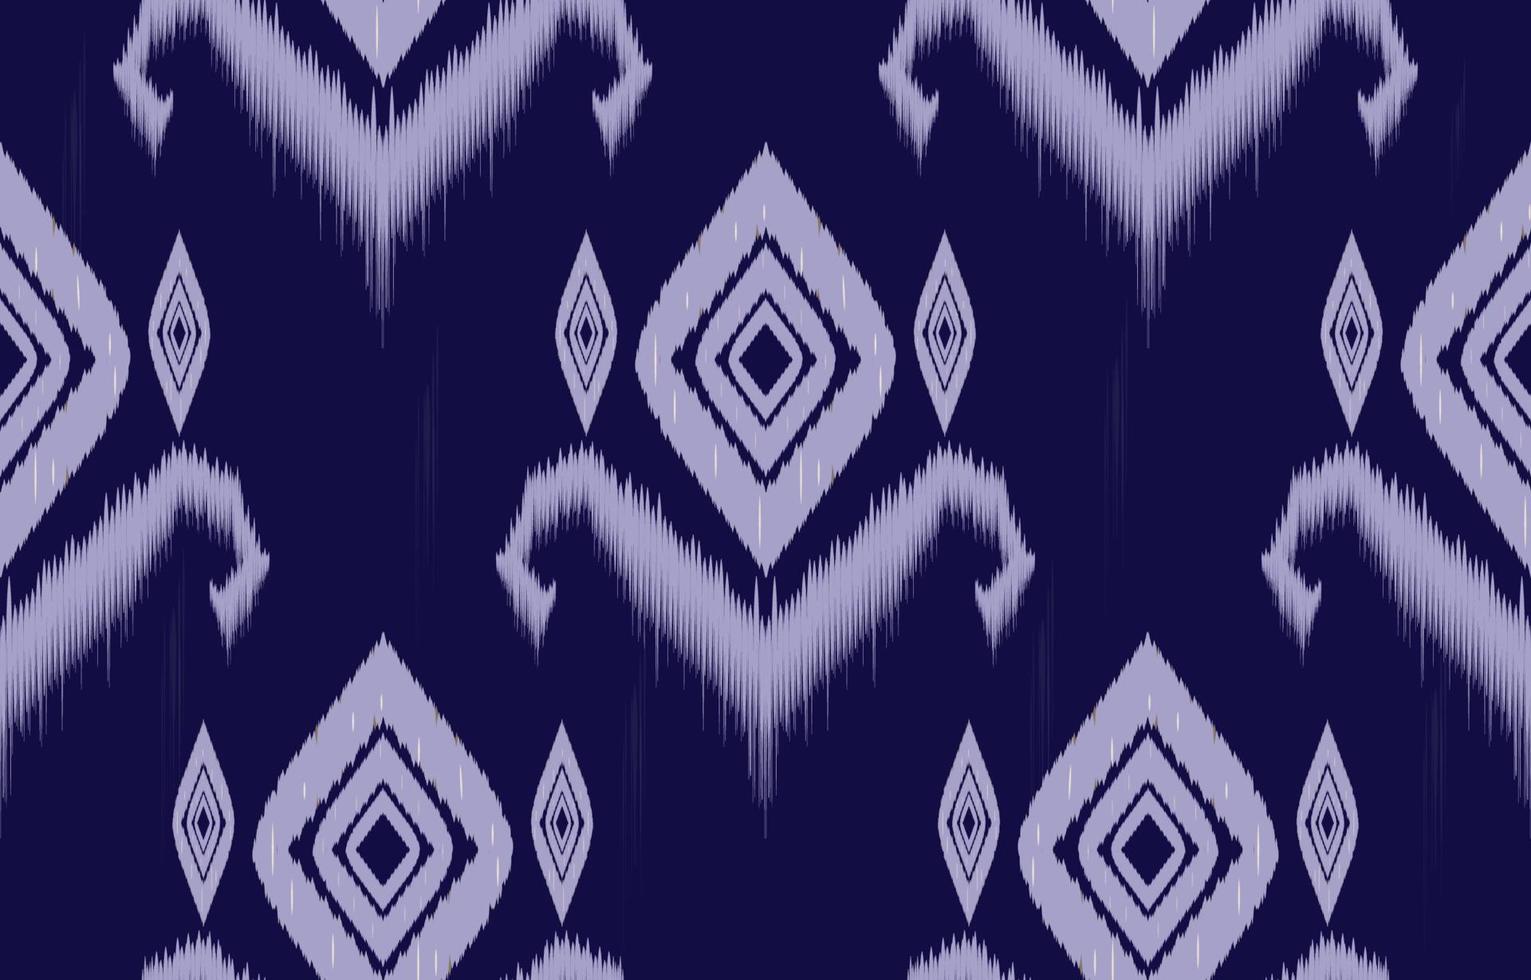 púrpura pastel ikat de patrones sin fisuras geométrico étnico oriental bordado tradicional style.design para fondo, alfombra, estera, papel pintado, ropa, envoltura, batik, tela, ilustración vectorial. vector